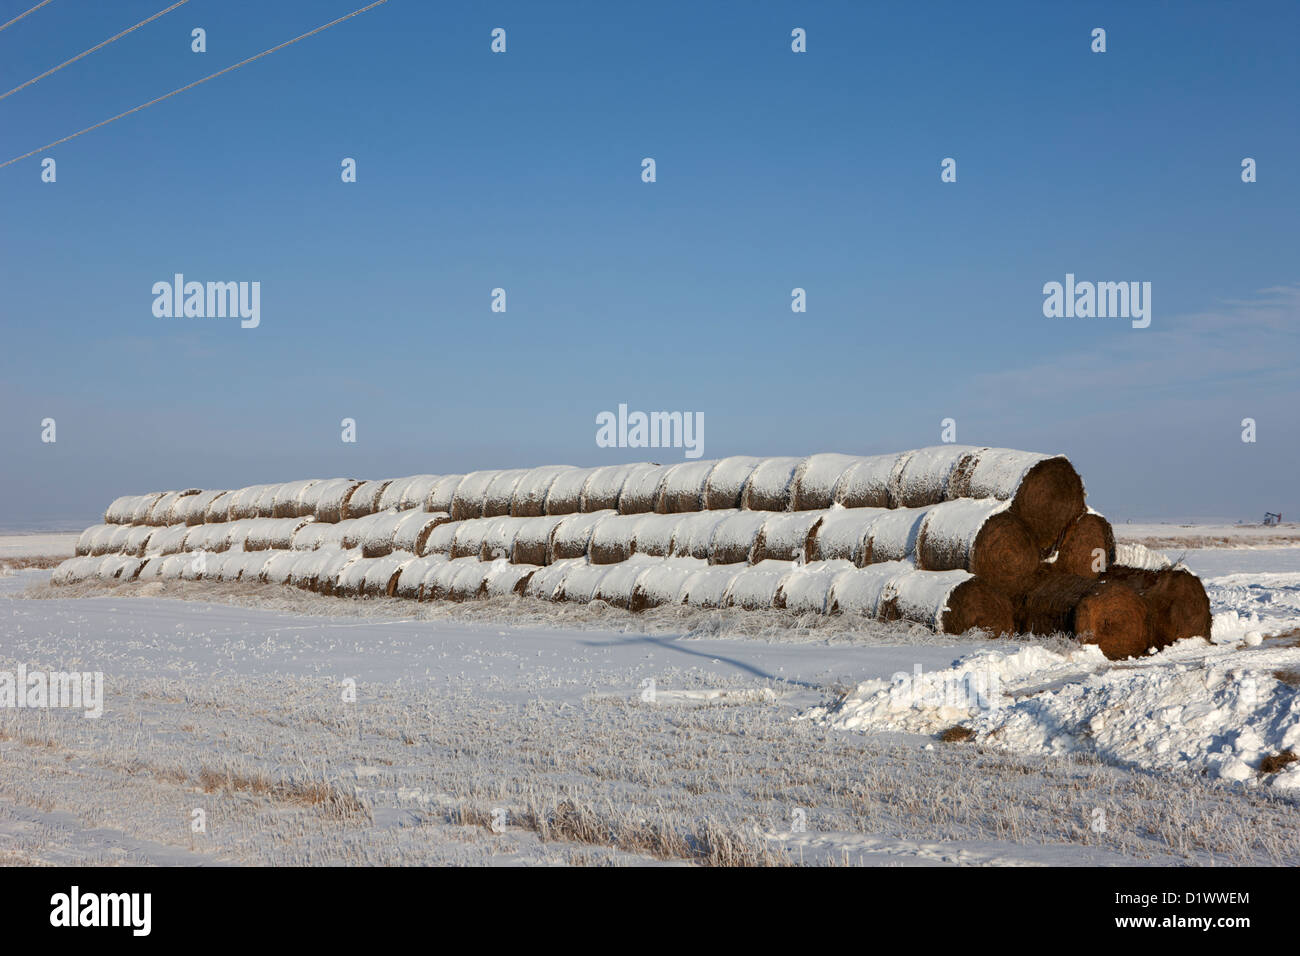 Stapel von gefrorenen Schnee bedeckt Heuballen in ein Feld vergessen Saskatchewan Kanada Stockfoto